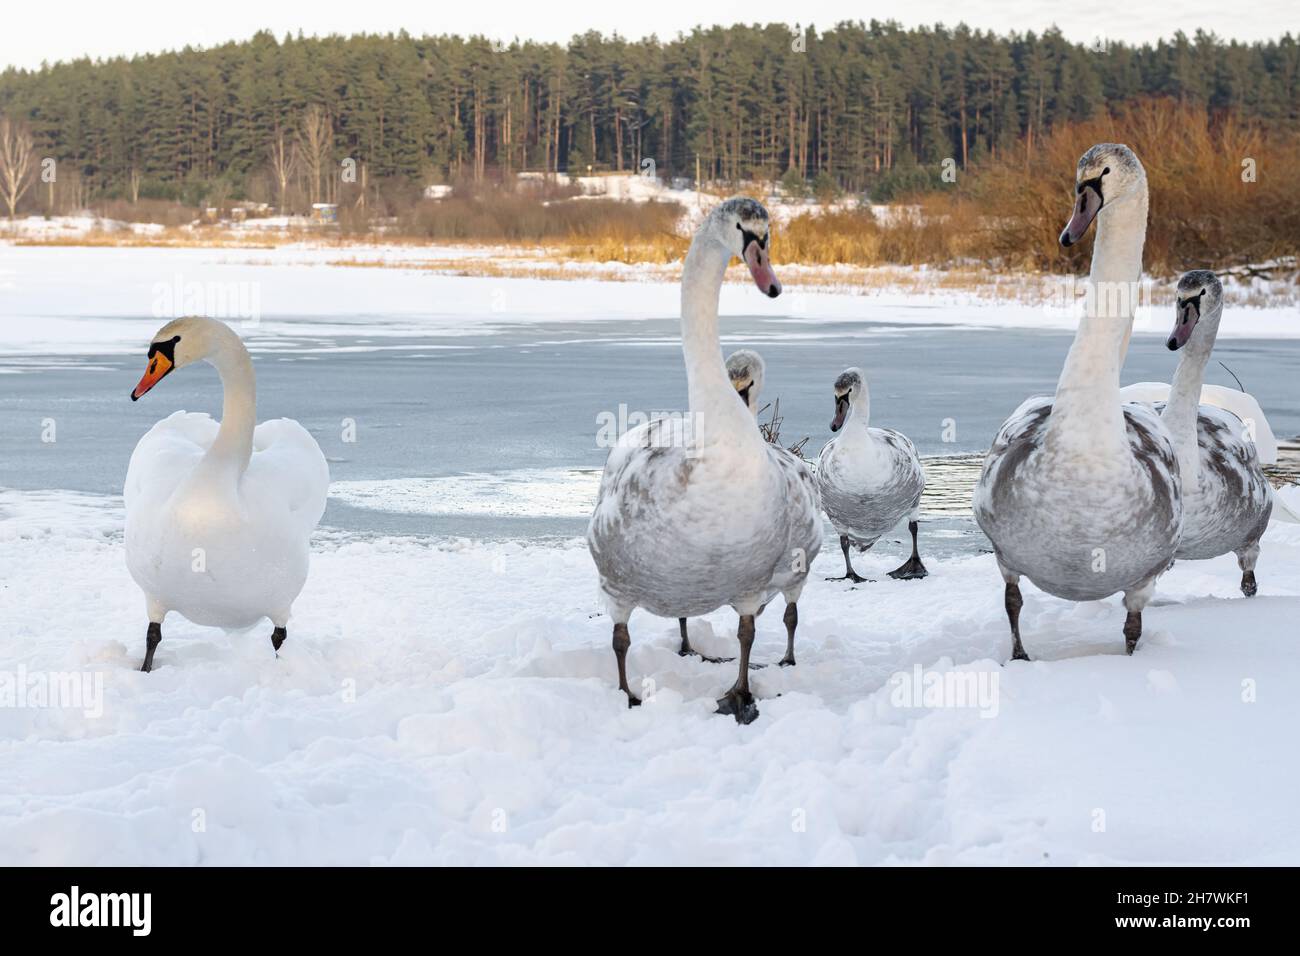 Une famille de cygnes sur la rive d'un lac gelé.Cygnes en hiver. Banque D'Images